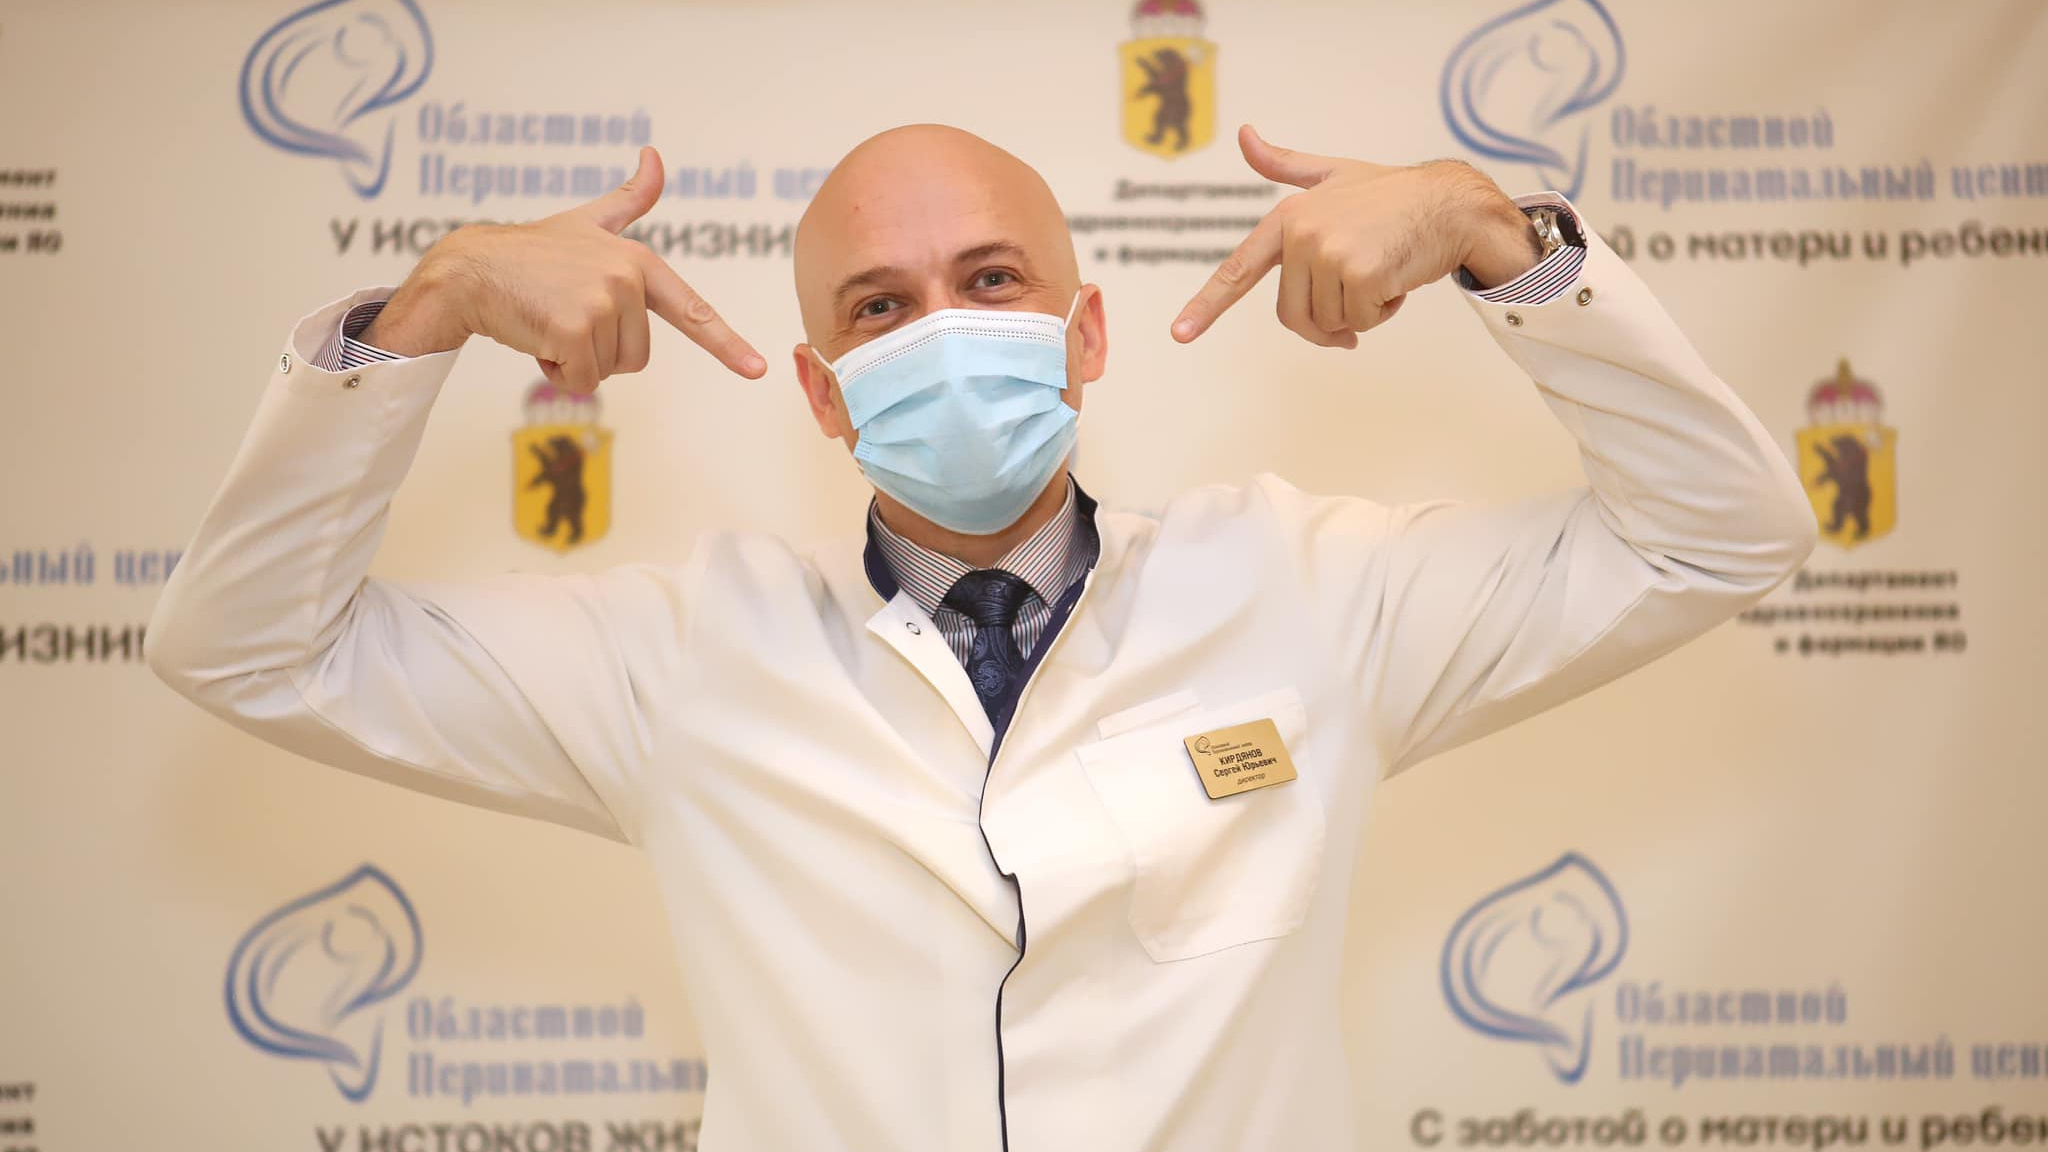 «Сторонникам борьбы посвящается»: главврач из Ярославля объяснил, как маски защищают от заражения COVID